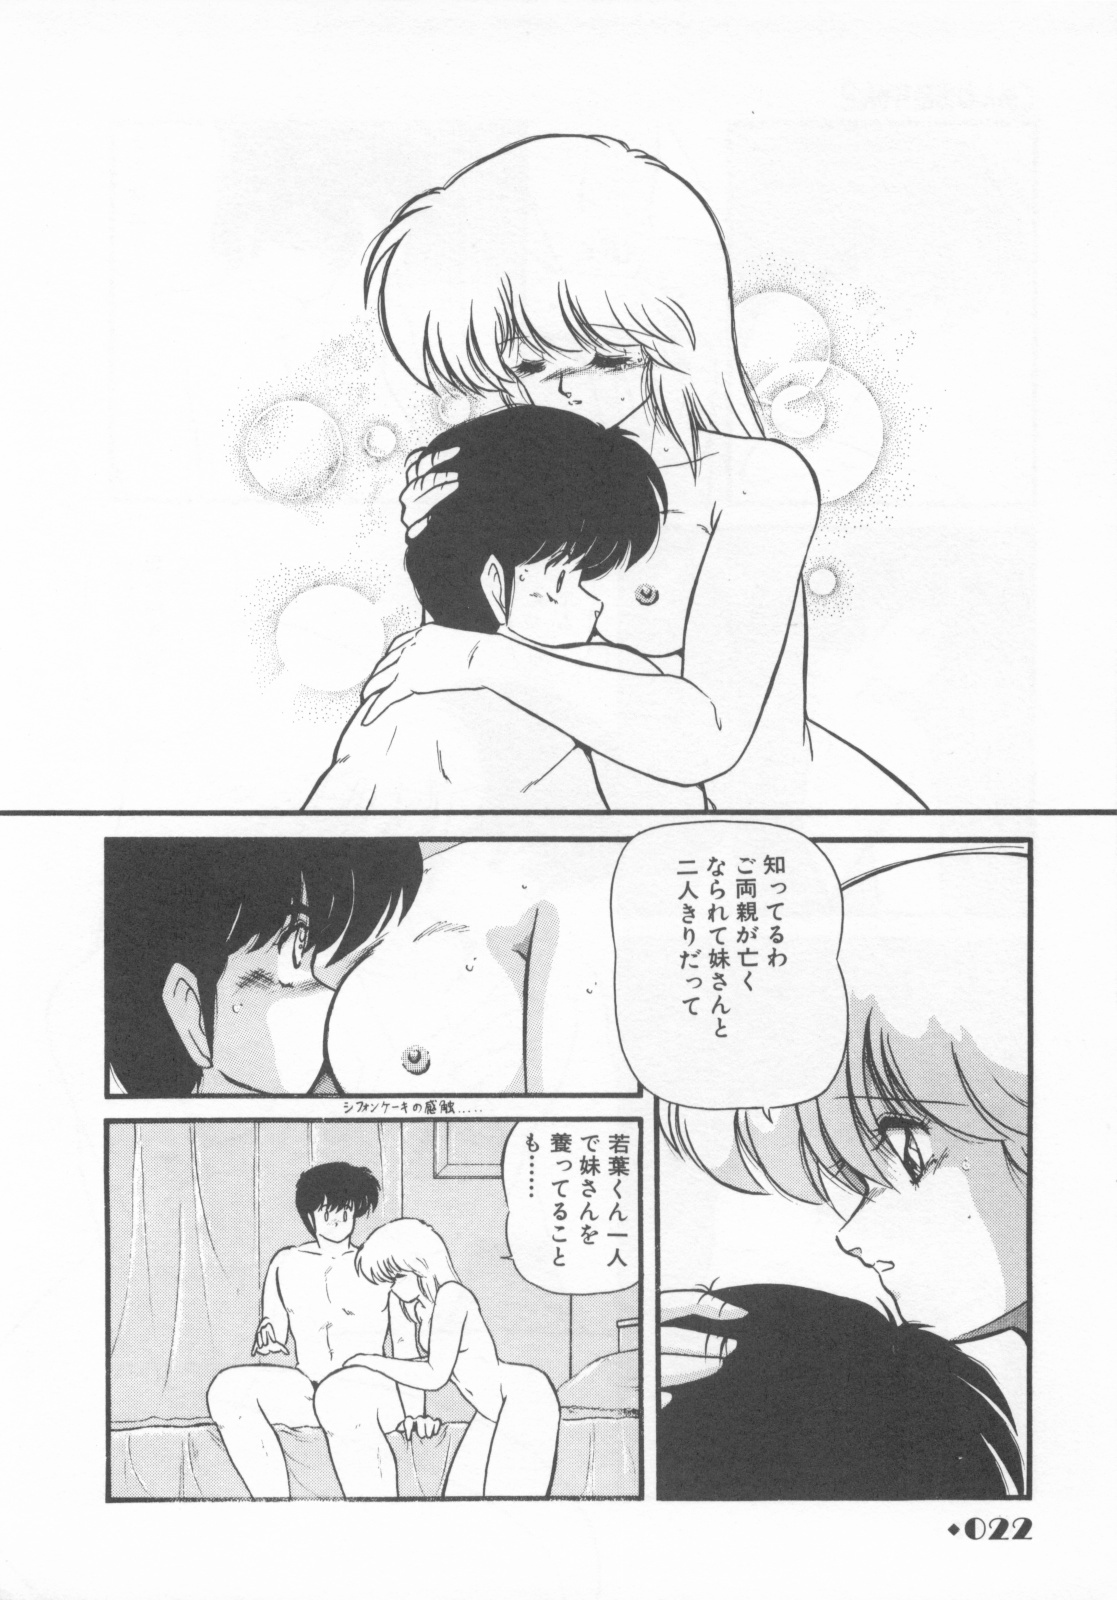 [Makuwa] Gomenne Mina-chan 1 page 24 full